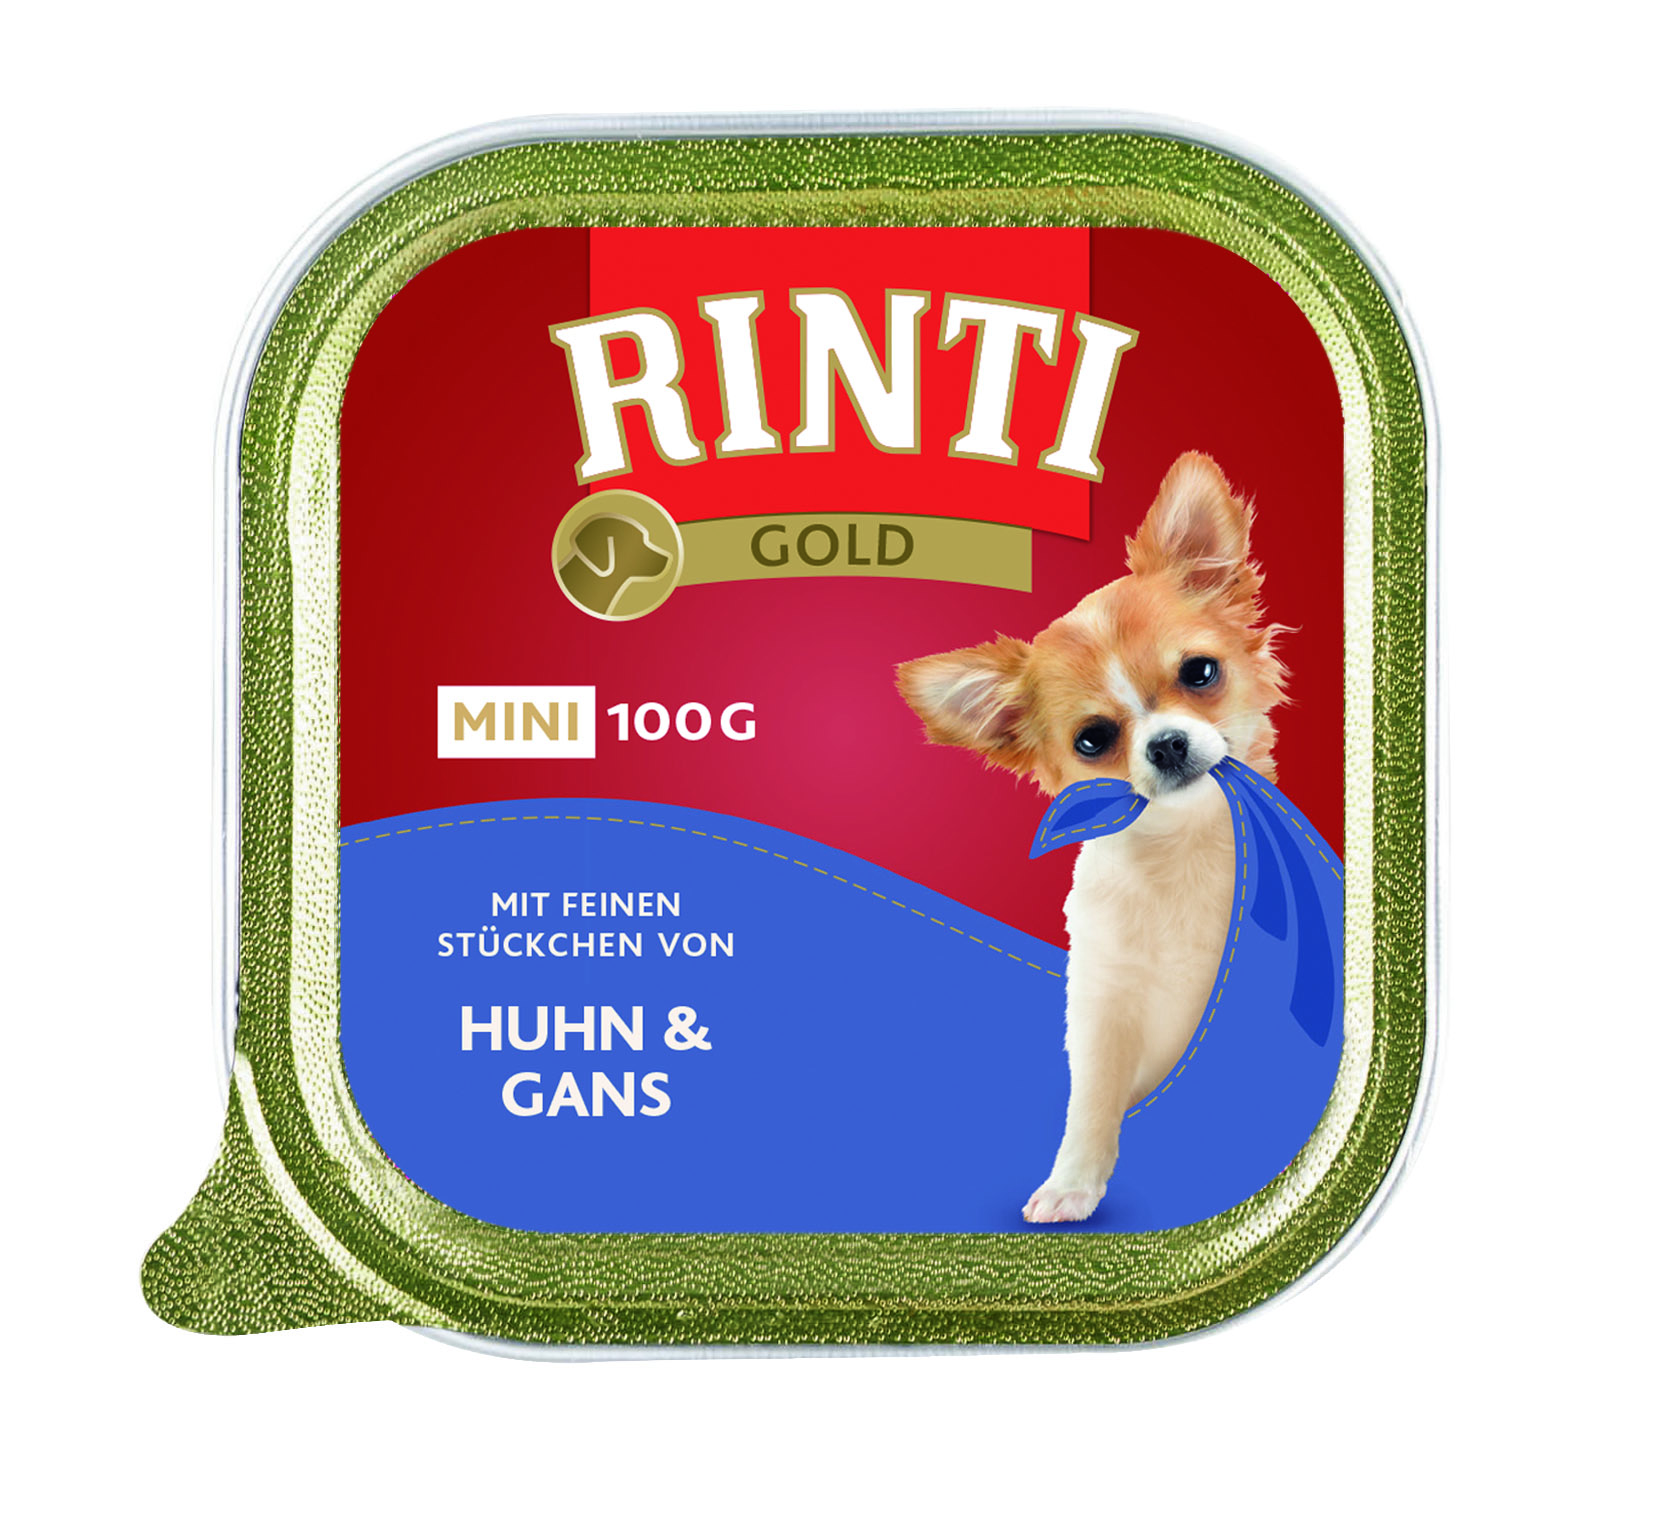 Rinti Gold mini Huhn & Gans 100g